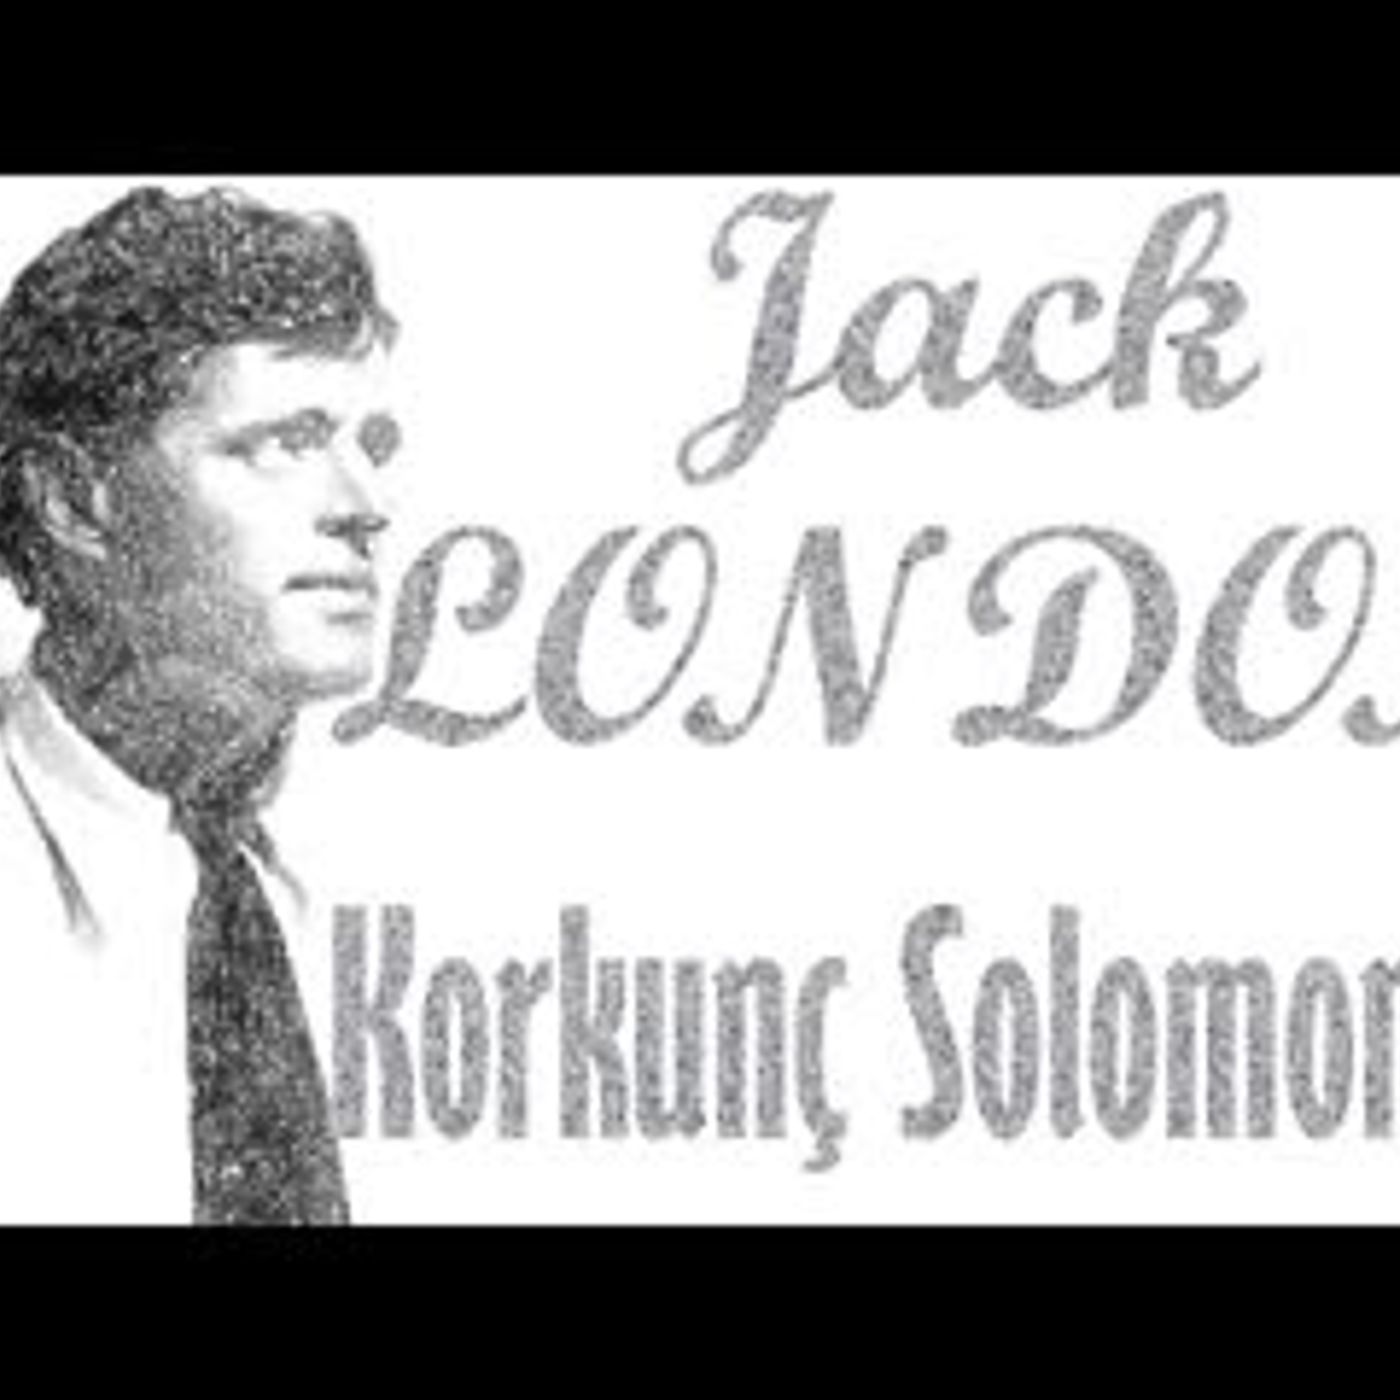 Korkunç Solomonlar - Jack LONDON sesli öykü tek parça